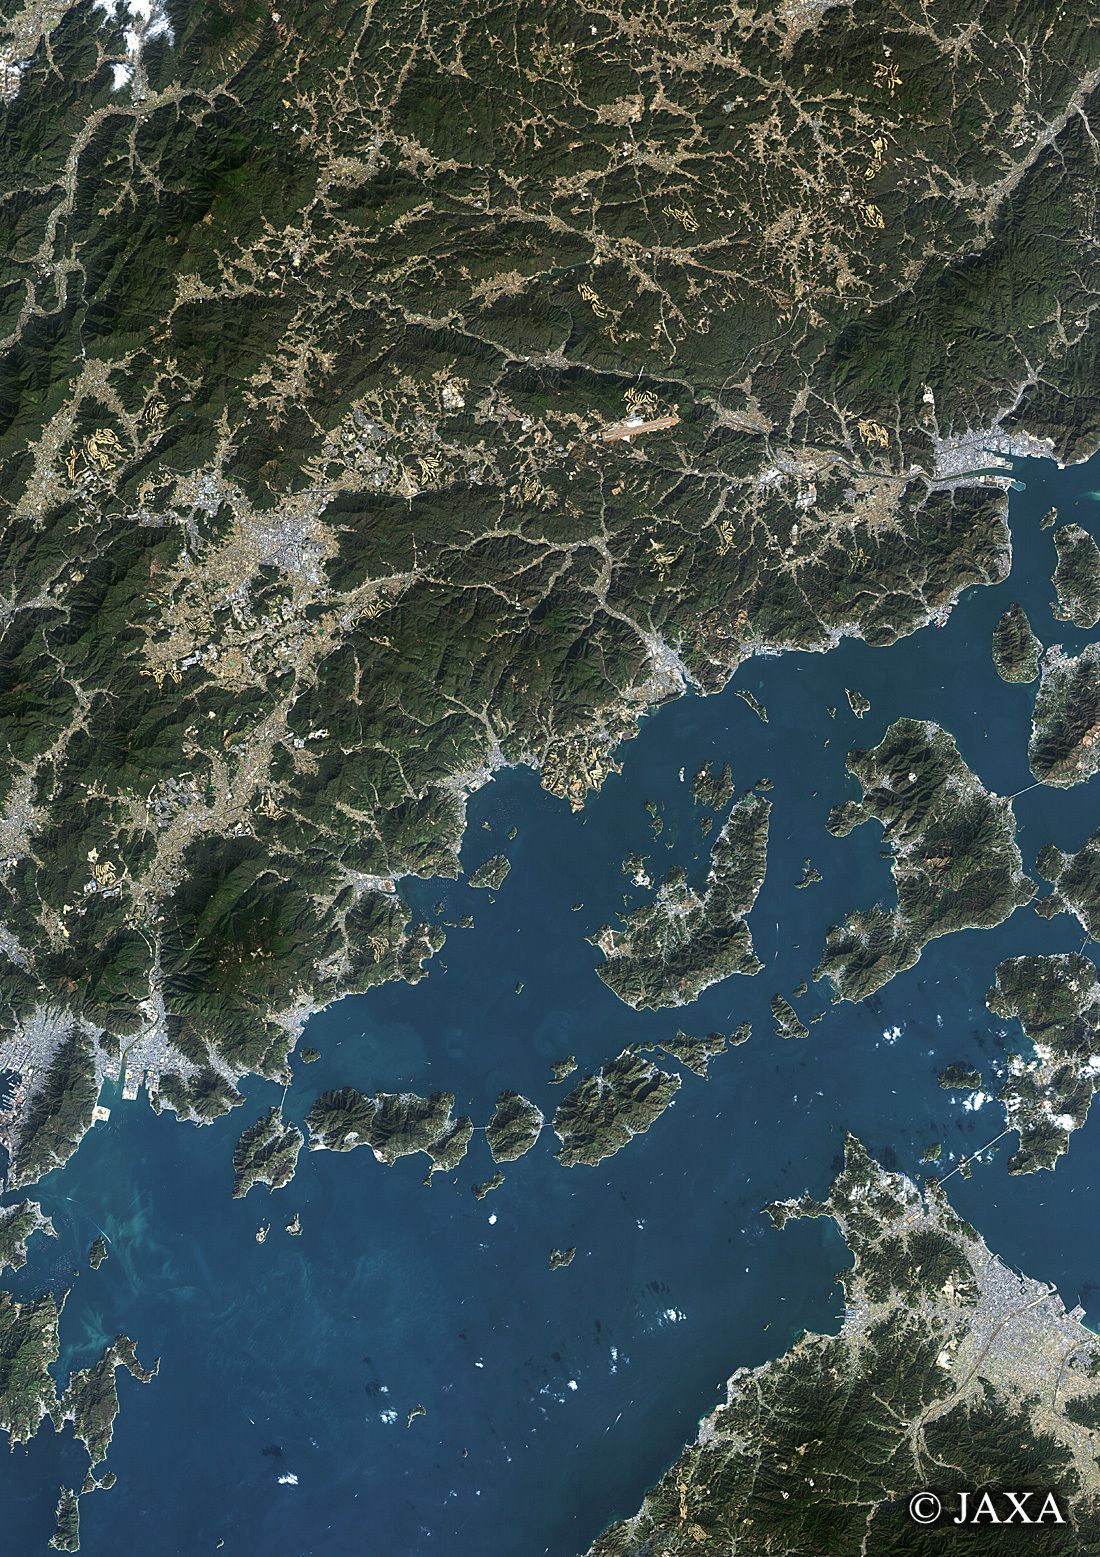 だいちから見た日本の都市 東広島と周辺地域:衛星画像